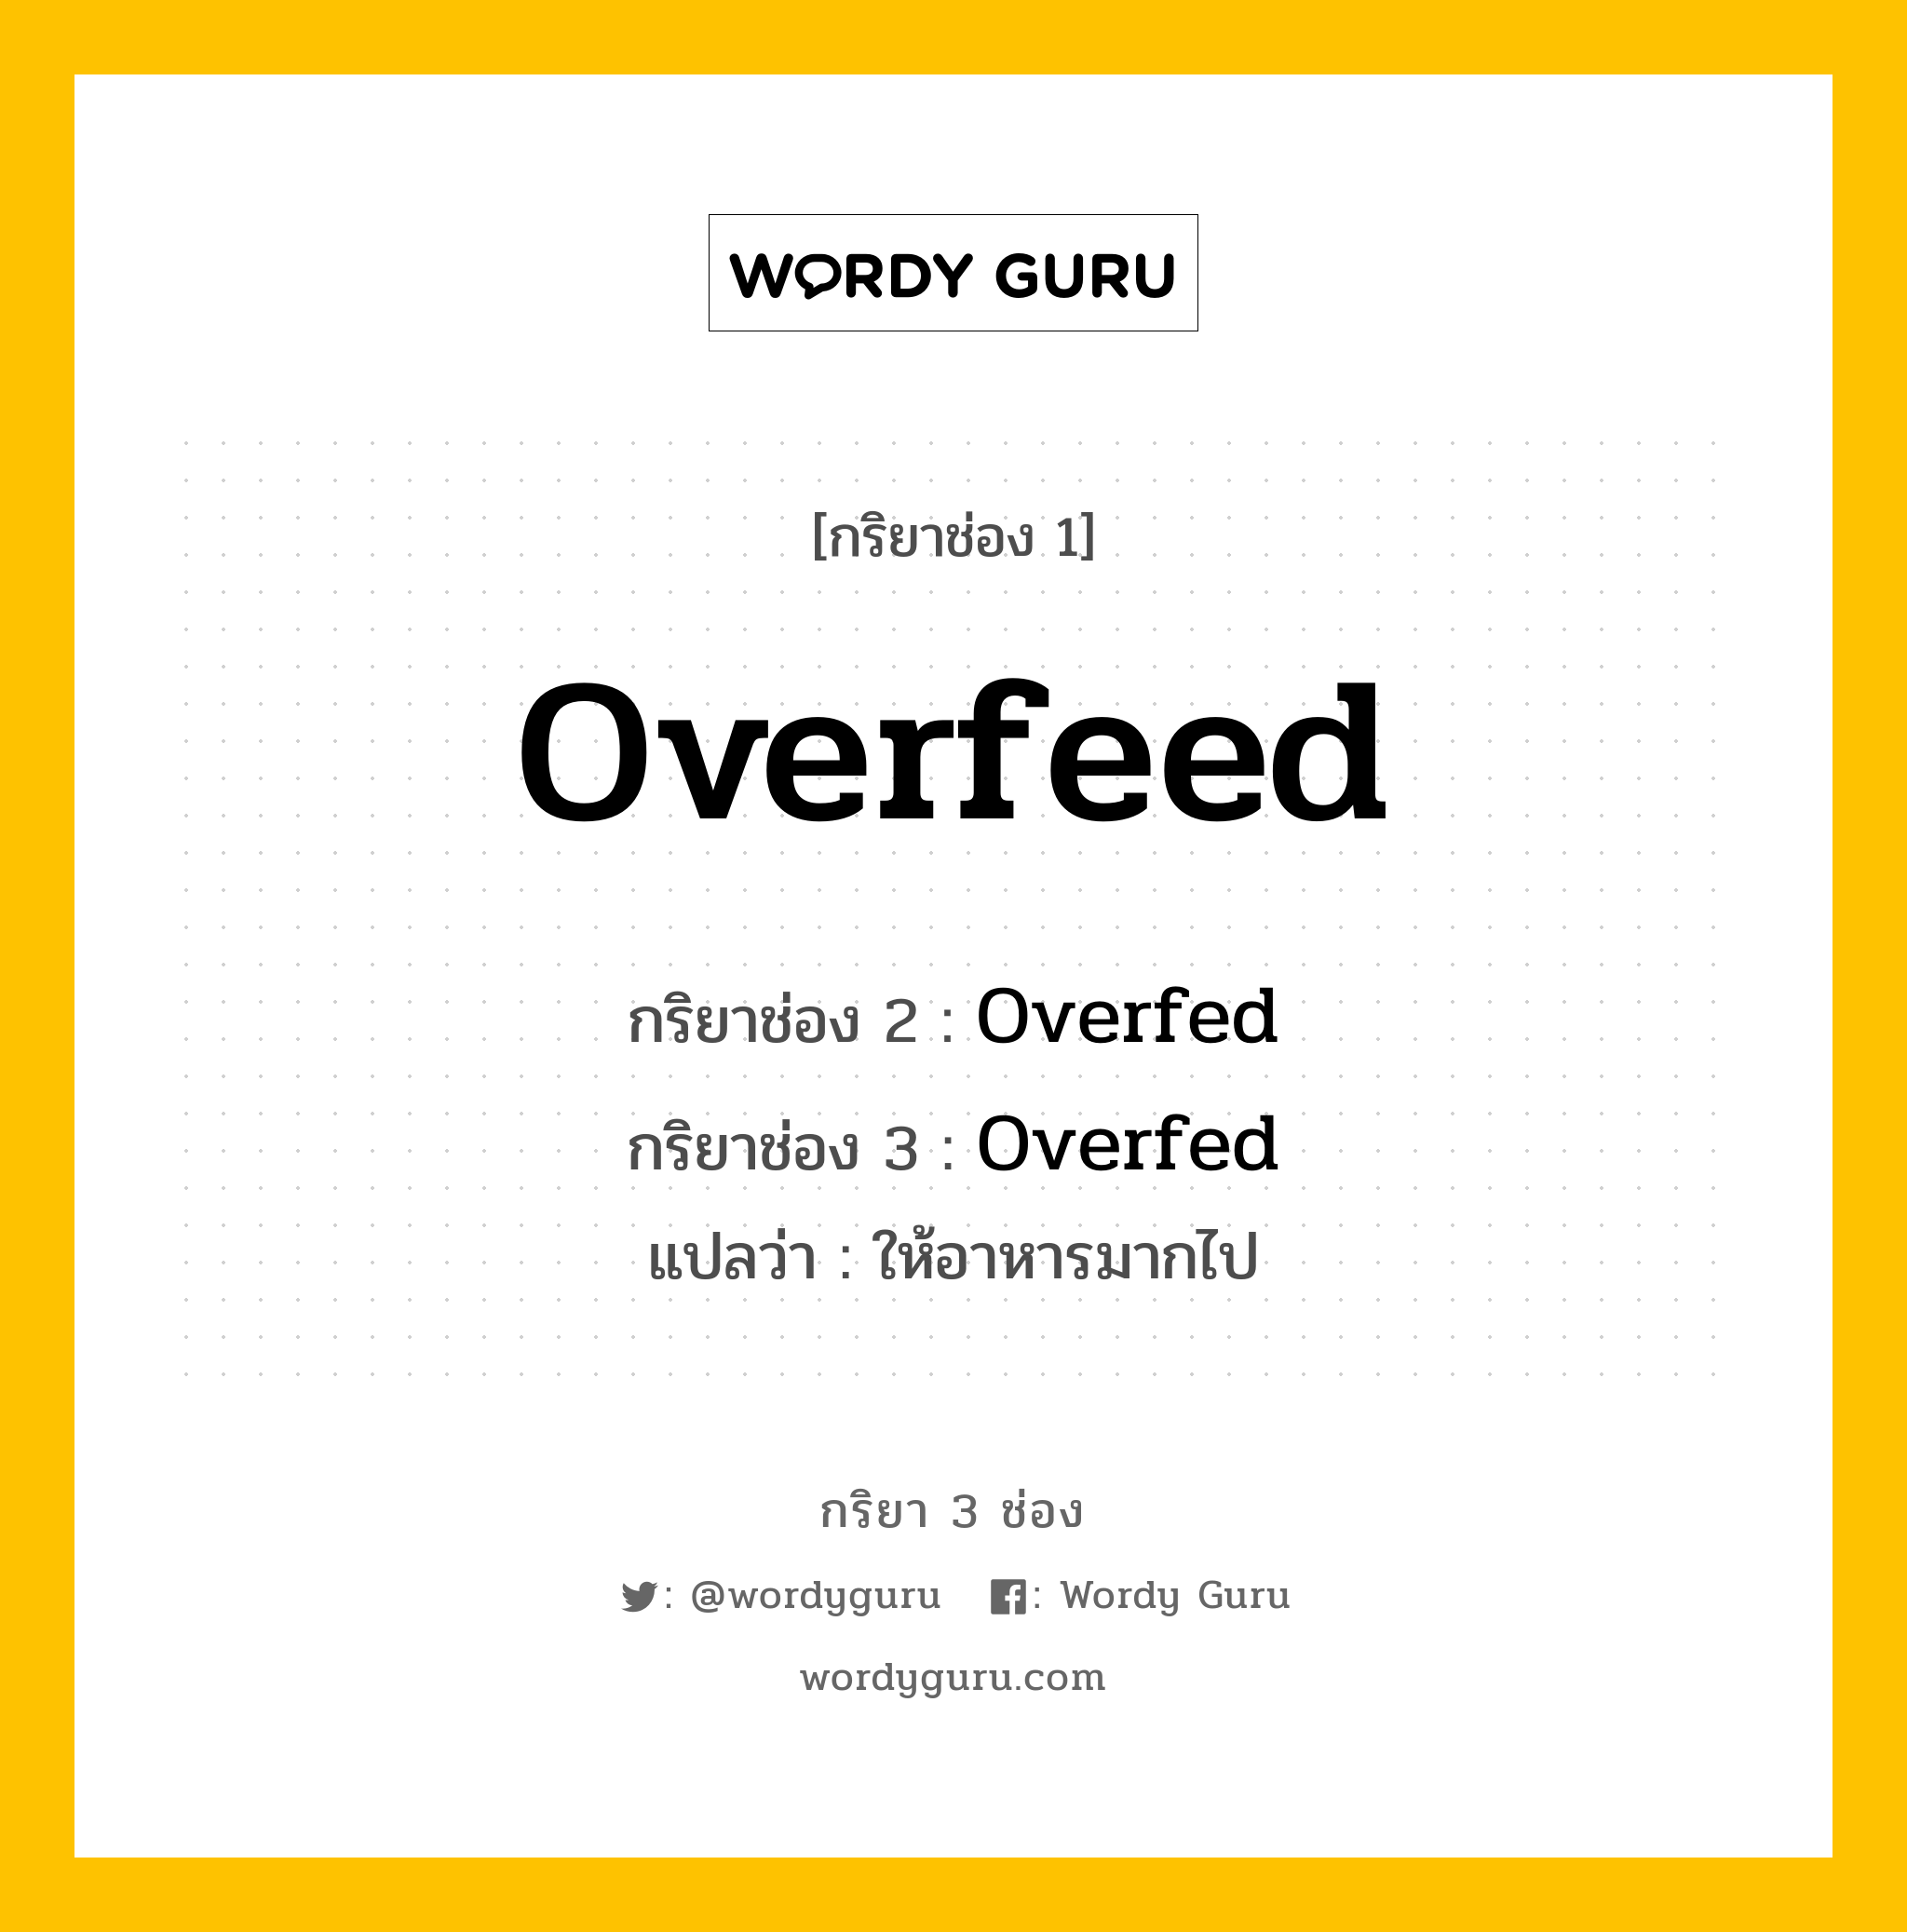 กริยา 3 ช่อง: Overfeed ช่อง 2 Overfeed ช่อง 3 คืออะไร, กริยาช่อง 1 Overfeed กริยาช่อง 2 Overfed กริยาช่อง 3 Overfed แปลว่า ให้อาหารมากไป หมวด Irregular Verb